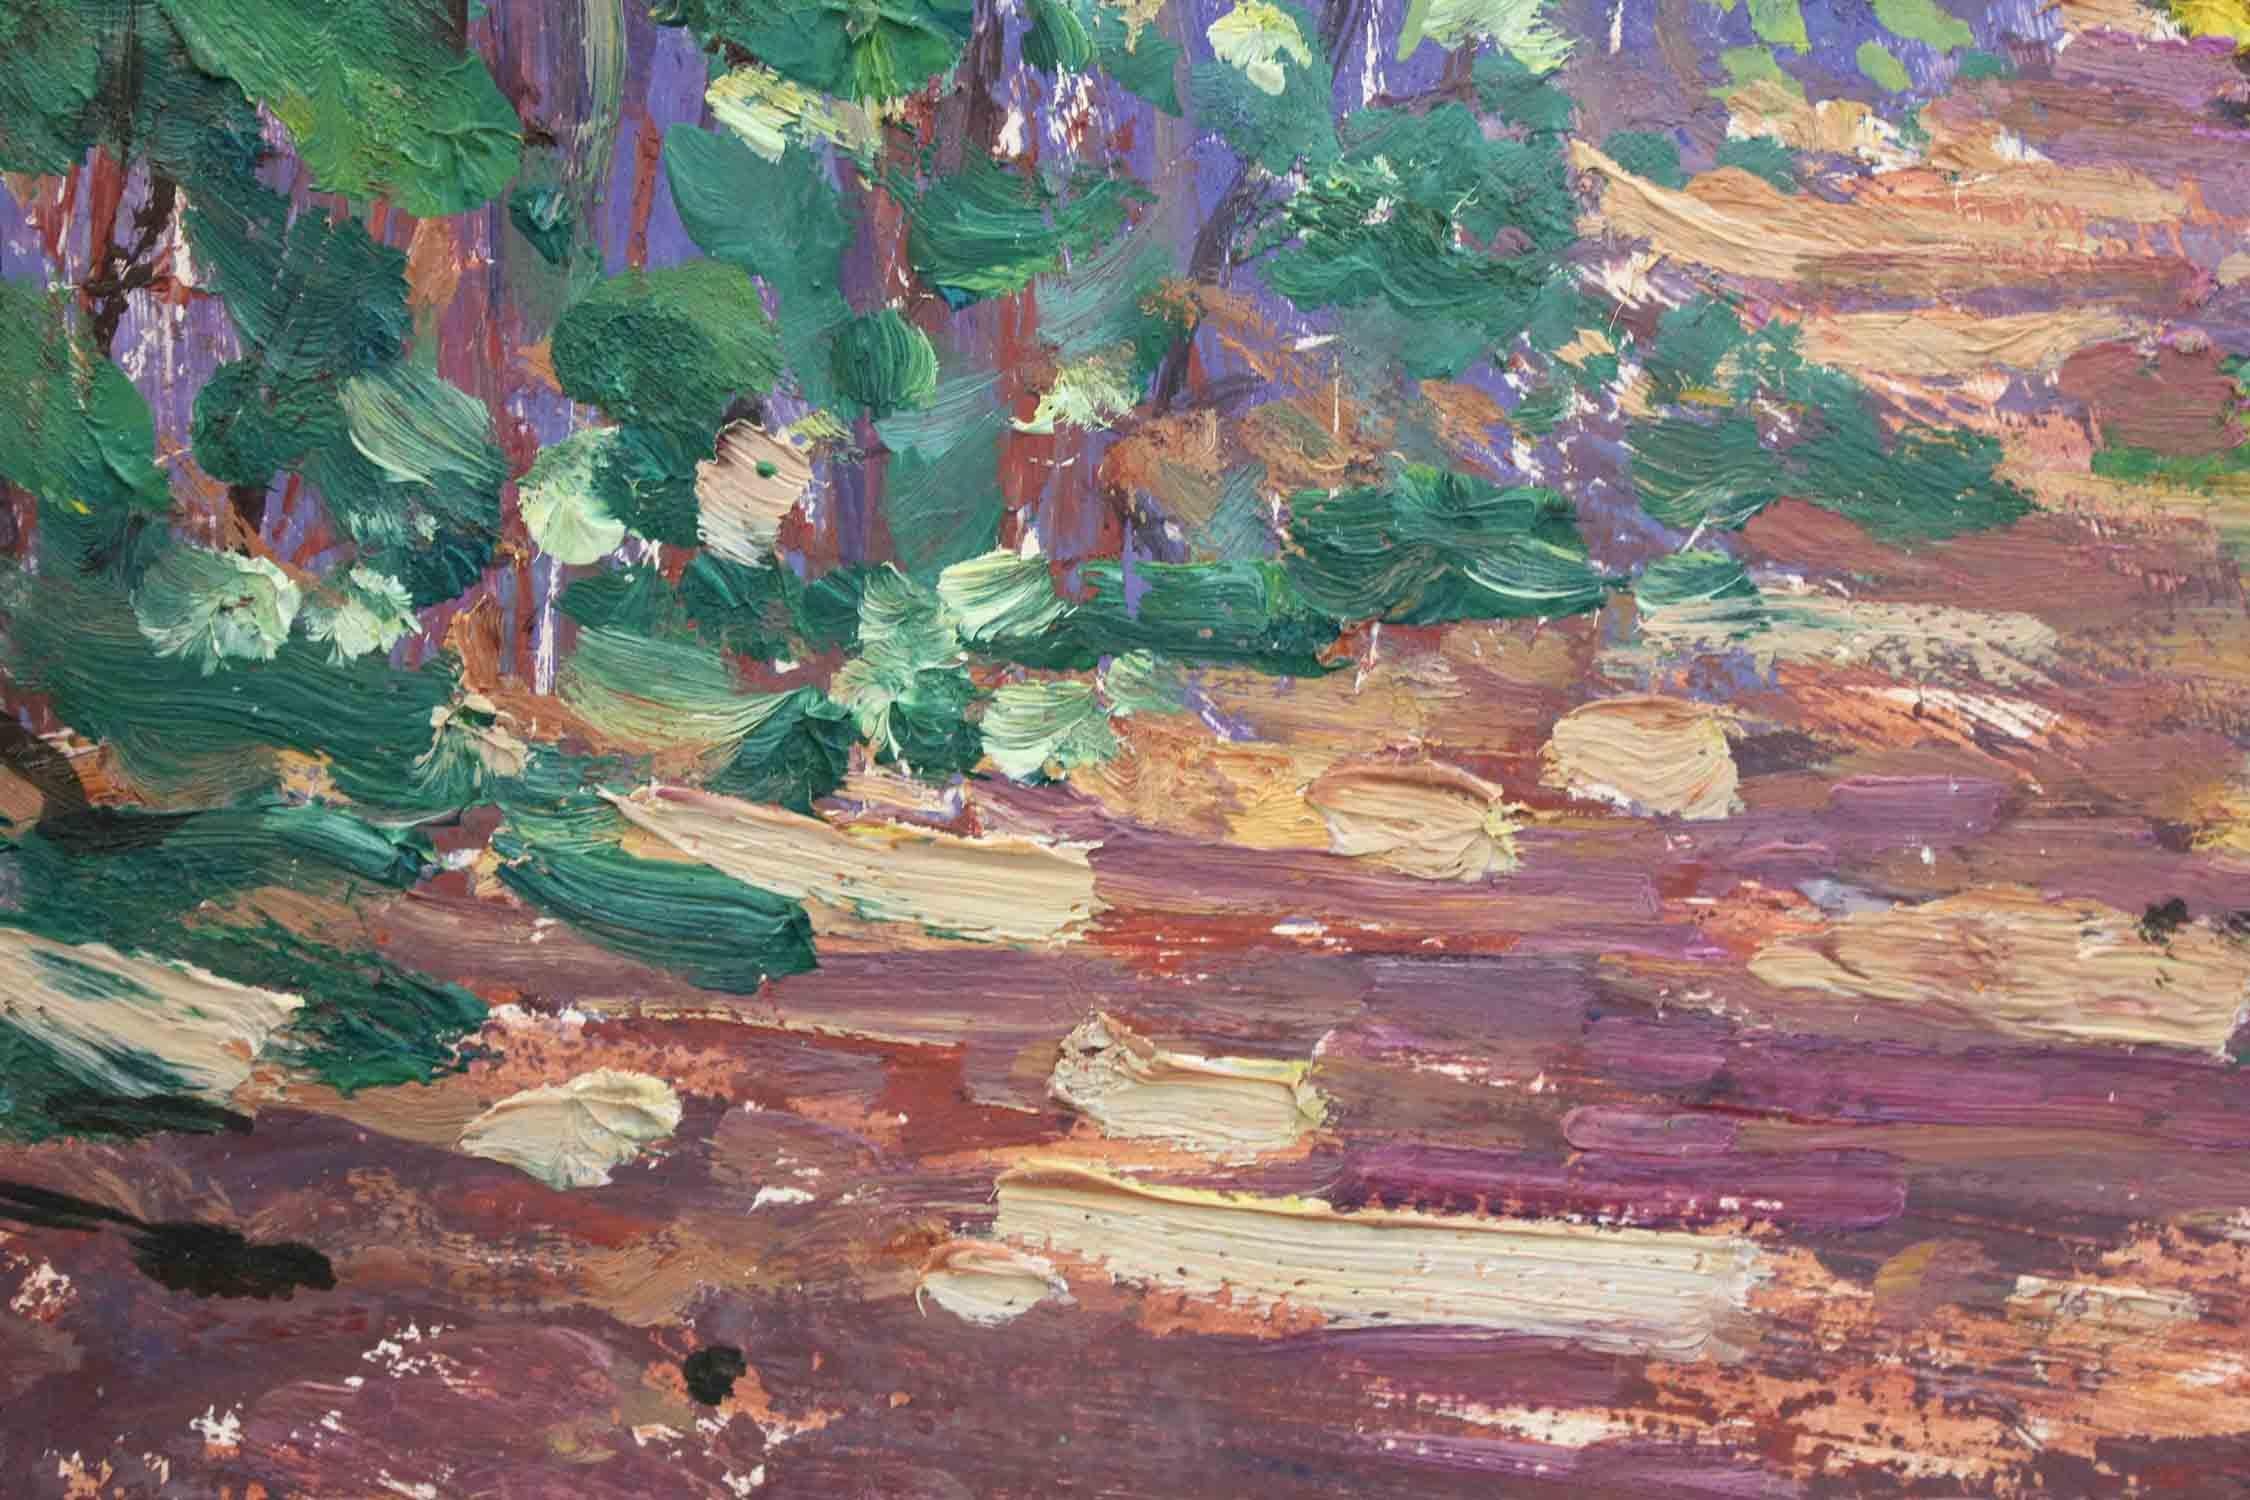 Hoffman est surtout connu pour ses paysages colorés et impressionnistes du 20e siècle. Ce tableau est une merveilleuse démonstration de ses peintures charismatiques avec une vue de 